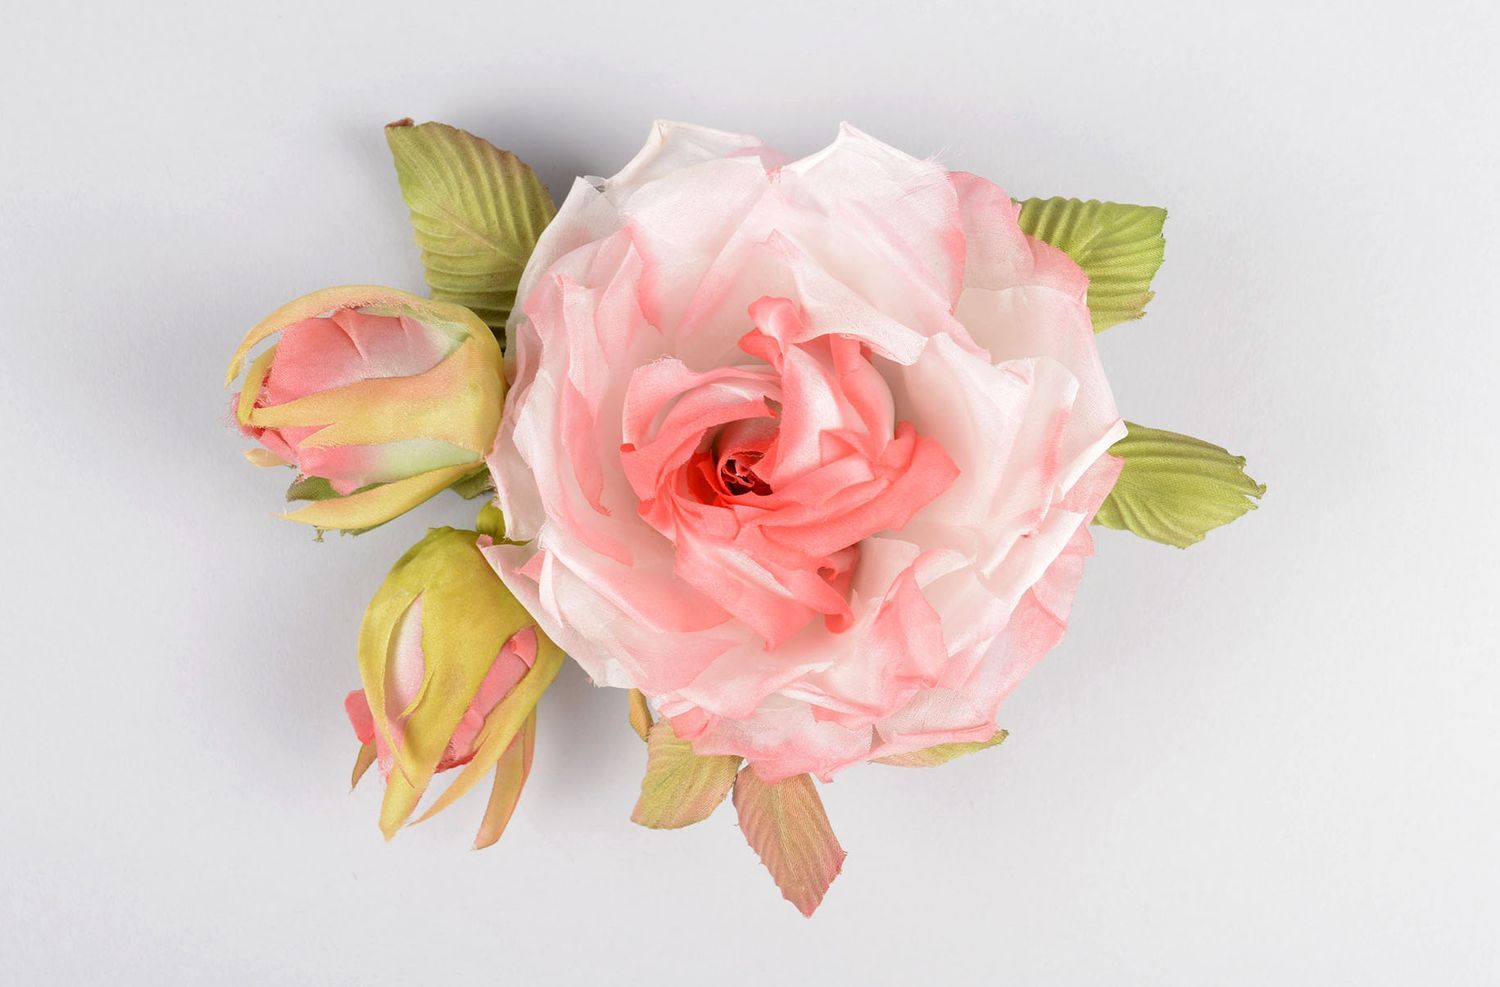 Брошь из шелка ручной работы брошь-заколка розовая роза авторская бижутерия фото 2